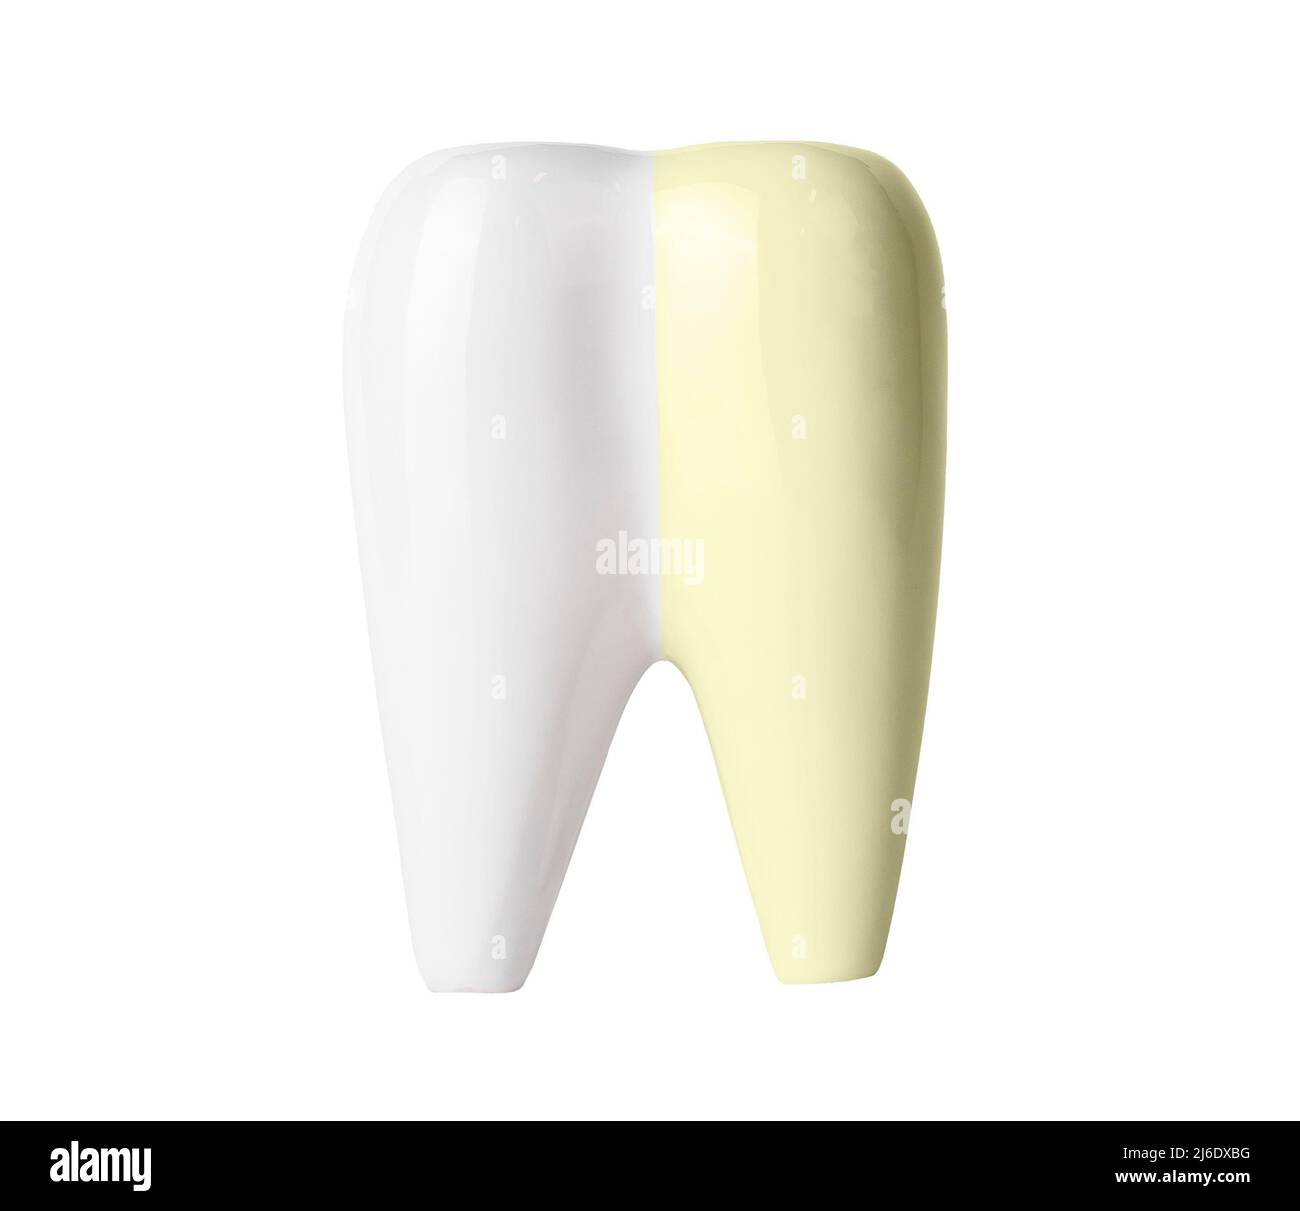 Zahnaufhellung vor und nach isoliert auf weißem Hintergrund. Professionelle Zahnreinigung und Bleichen, Zahnpflege und Mundhygiene Konzept. Hochwertige Fotos Stockfoto